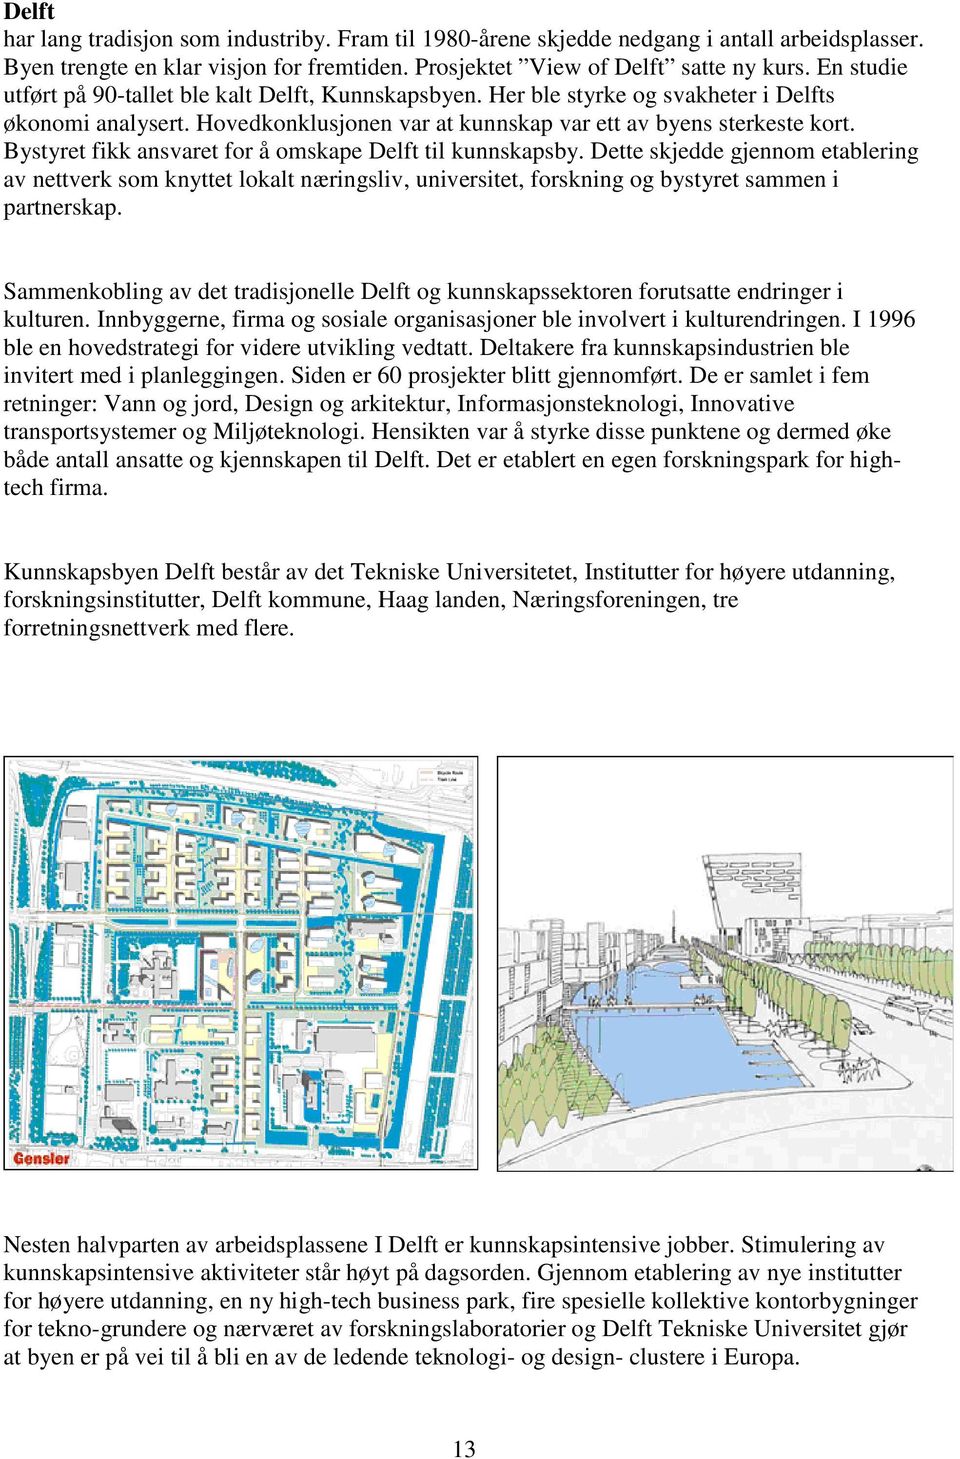 Bystyret fikk ansvaret for å omskape Delft til kunnskapsby. Dette skjedde gjennom etablering av nettverk som knyttet lokalt næringsliv, universitet, forskning og bystyret sammen i partnerskap.